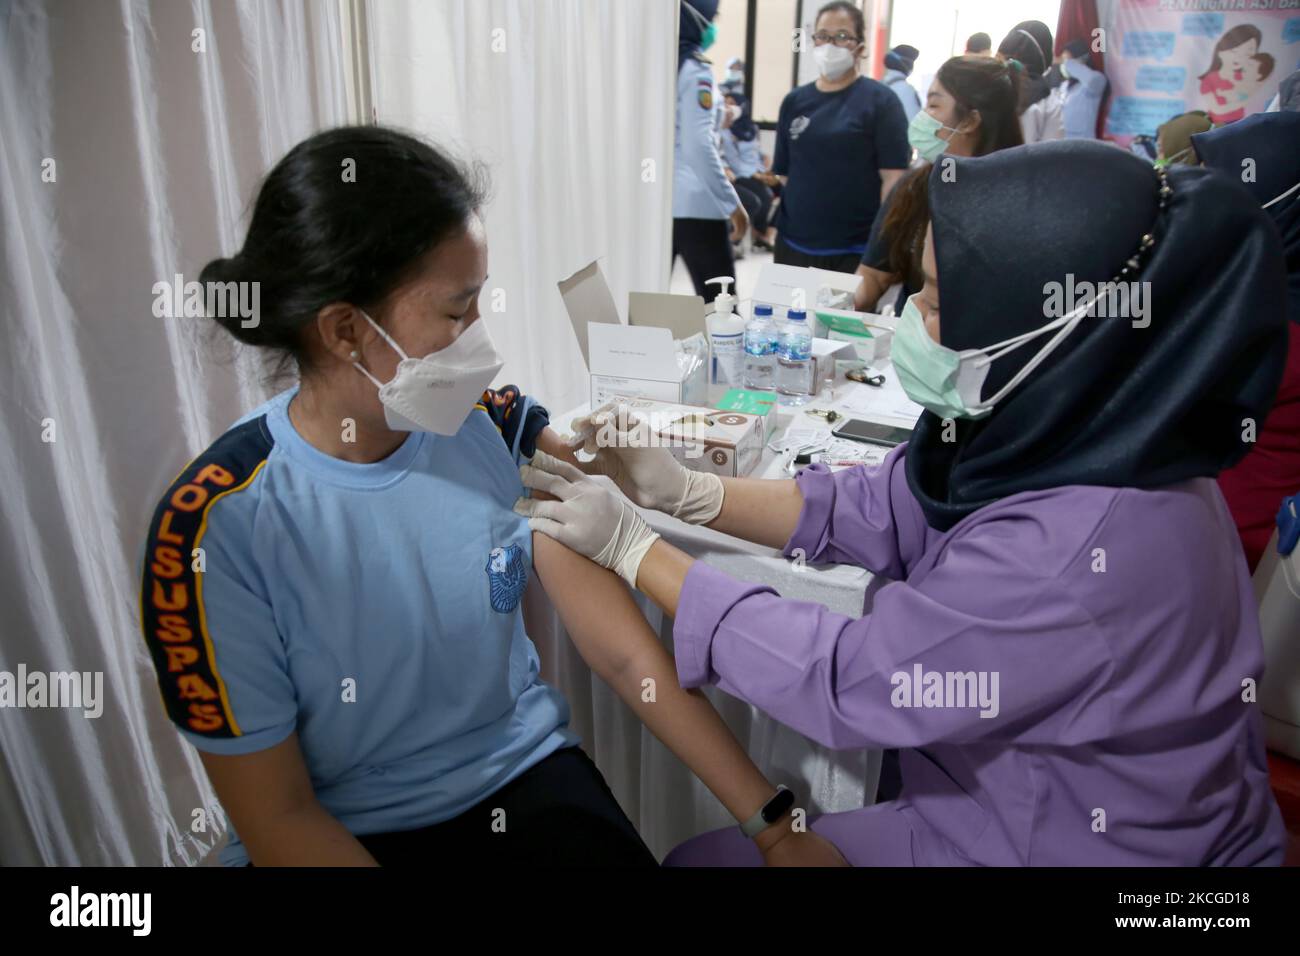 Les agents correctionnels et les détenus (WBP) du pénitencier de classe II-A (Lapas) Pondok Bambu, dans l'est de Jakarta, subissent une vaccination de masse pour Covid-19, le juin 23,2021. Type de vaccination de masse Sinovac pour les détenus et les agents de prison afin de garantir la distribution du programme de vaccination de masse COVID-19. Au total, 263 personnes, soit 32 agents pénitentiaires et 231 résidents assistés, ont été vaccinées contre la COVID-19 pour créer une immunité auditive au milieu de la pandémie COVID-19, qui n'est pas encore terminée. (Photo de Dasril Roszandi/NurPhoto) Banque D'Images